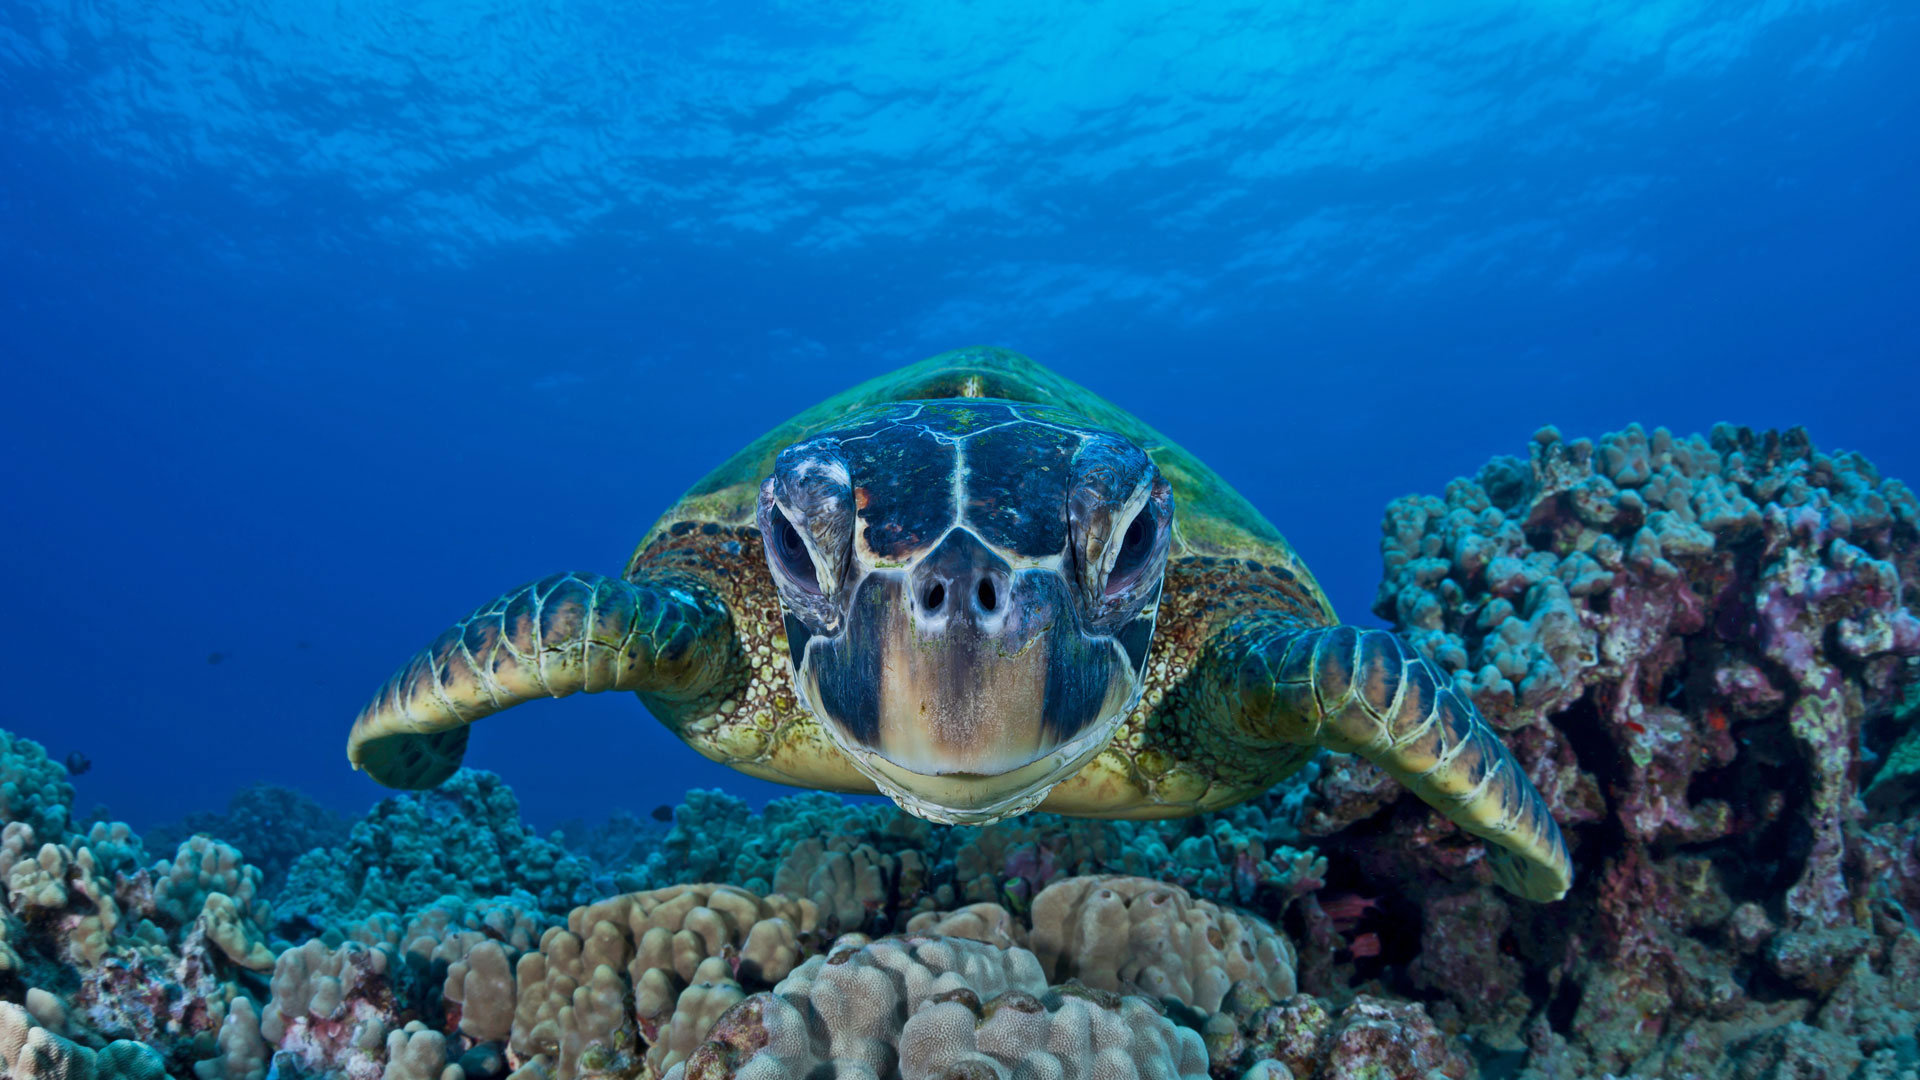 essere carta da parati,tartaruga di mare,tartaruga di mare,tartaruga marina ridley verde oliva,tartaruga verde,tartaruga